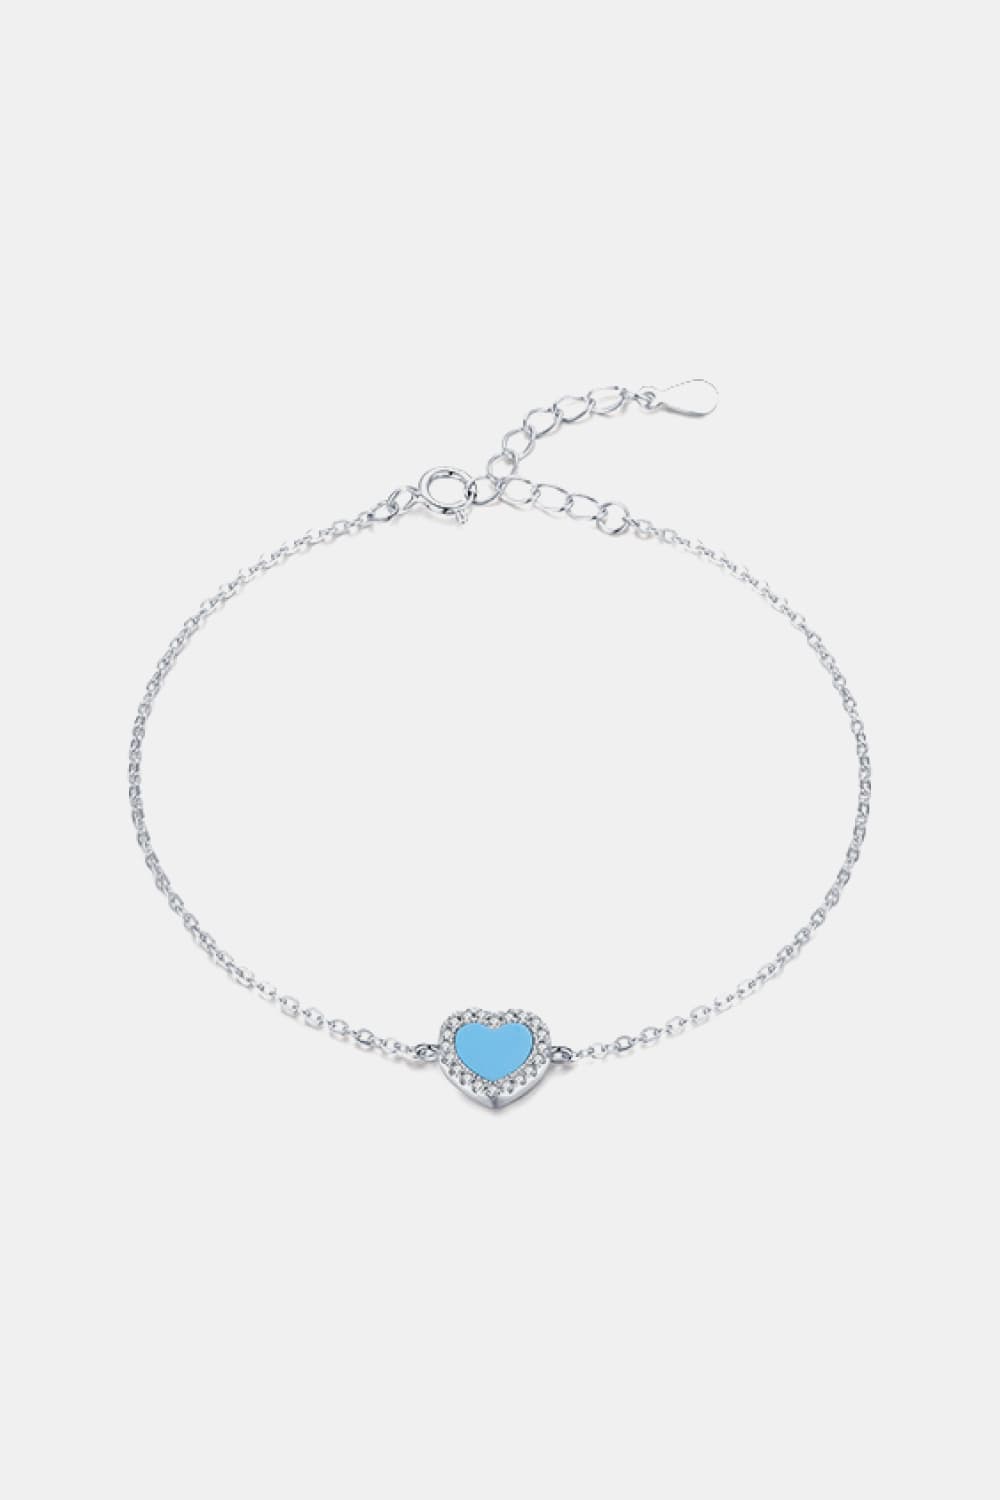 925 Sterling Silver Heart Shape Spring Ring Closure Bracelets - Silver / One Size - Women’s Jewelry - Bracelets - 4